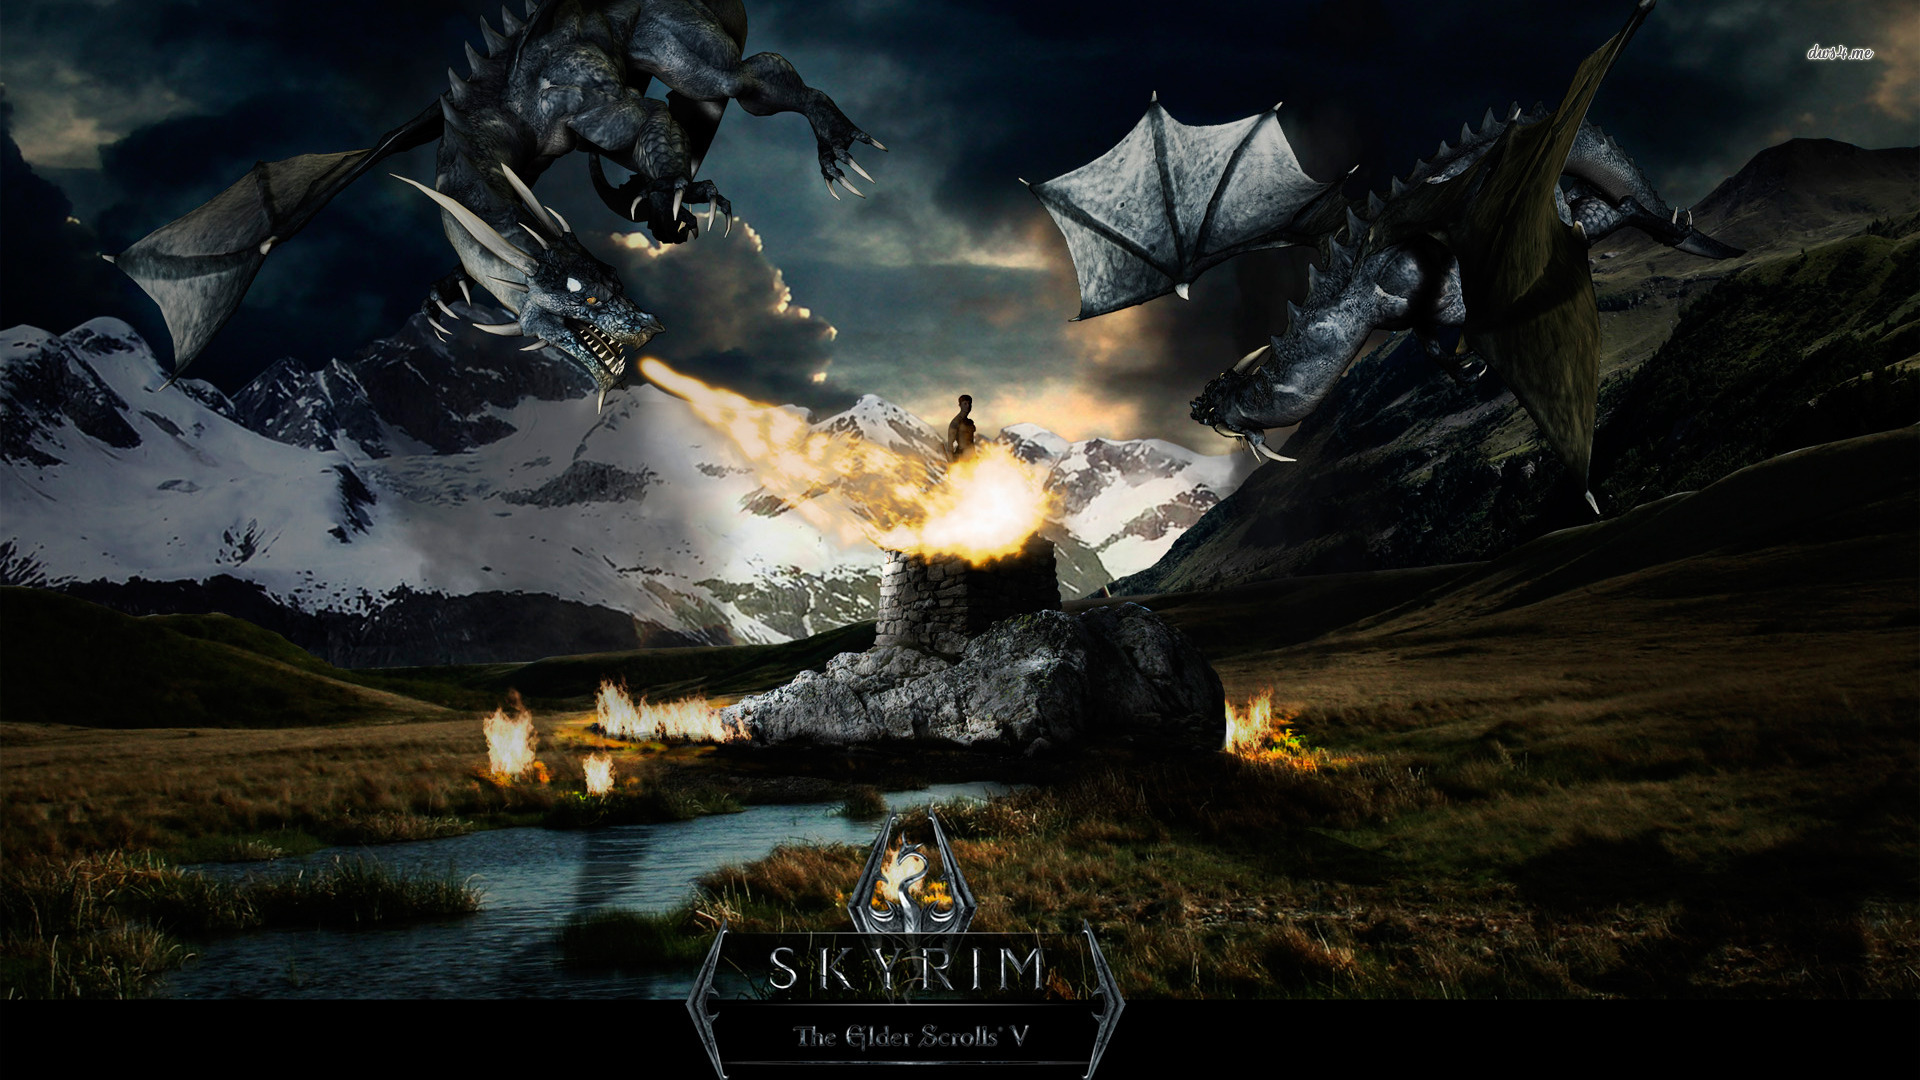 The Elder Scrolls V Skyrim Video Game Poster Wallpaper